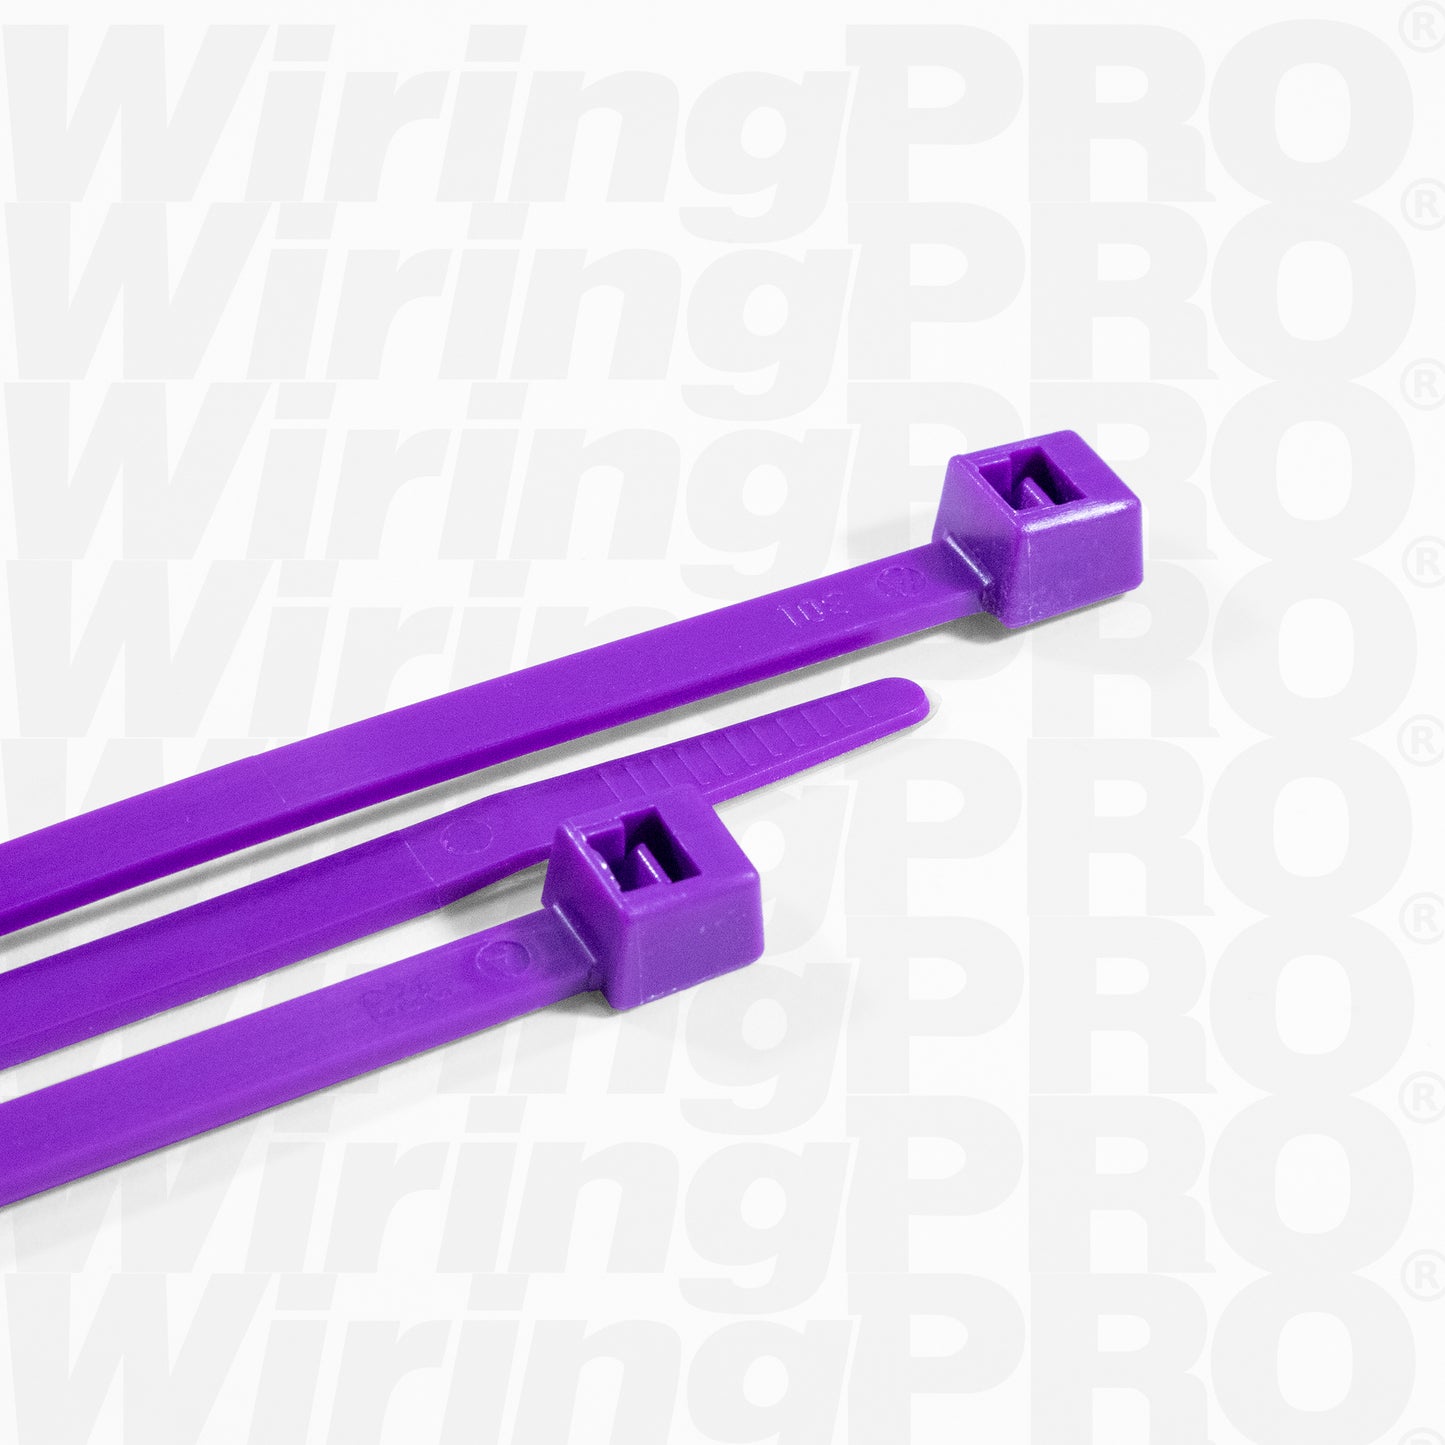 Purple Nylon Cable Ties